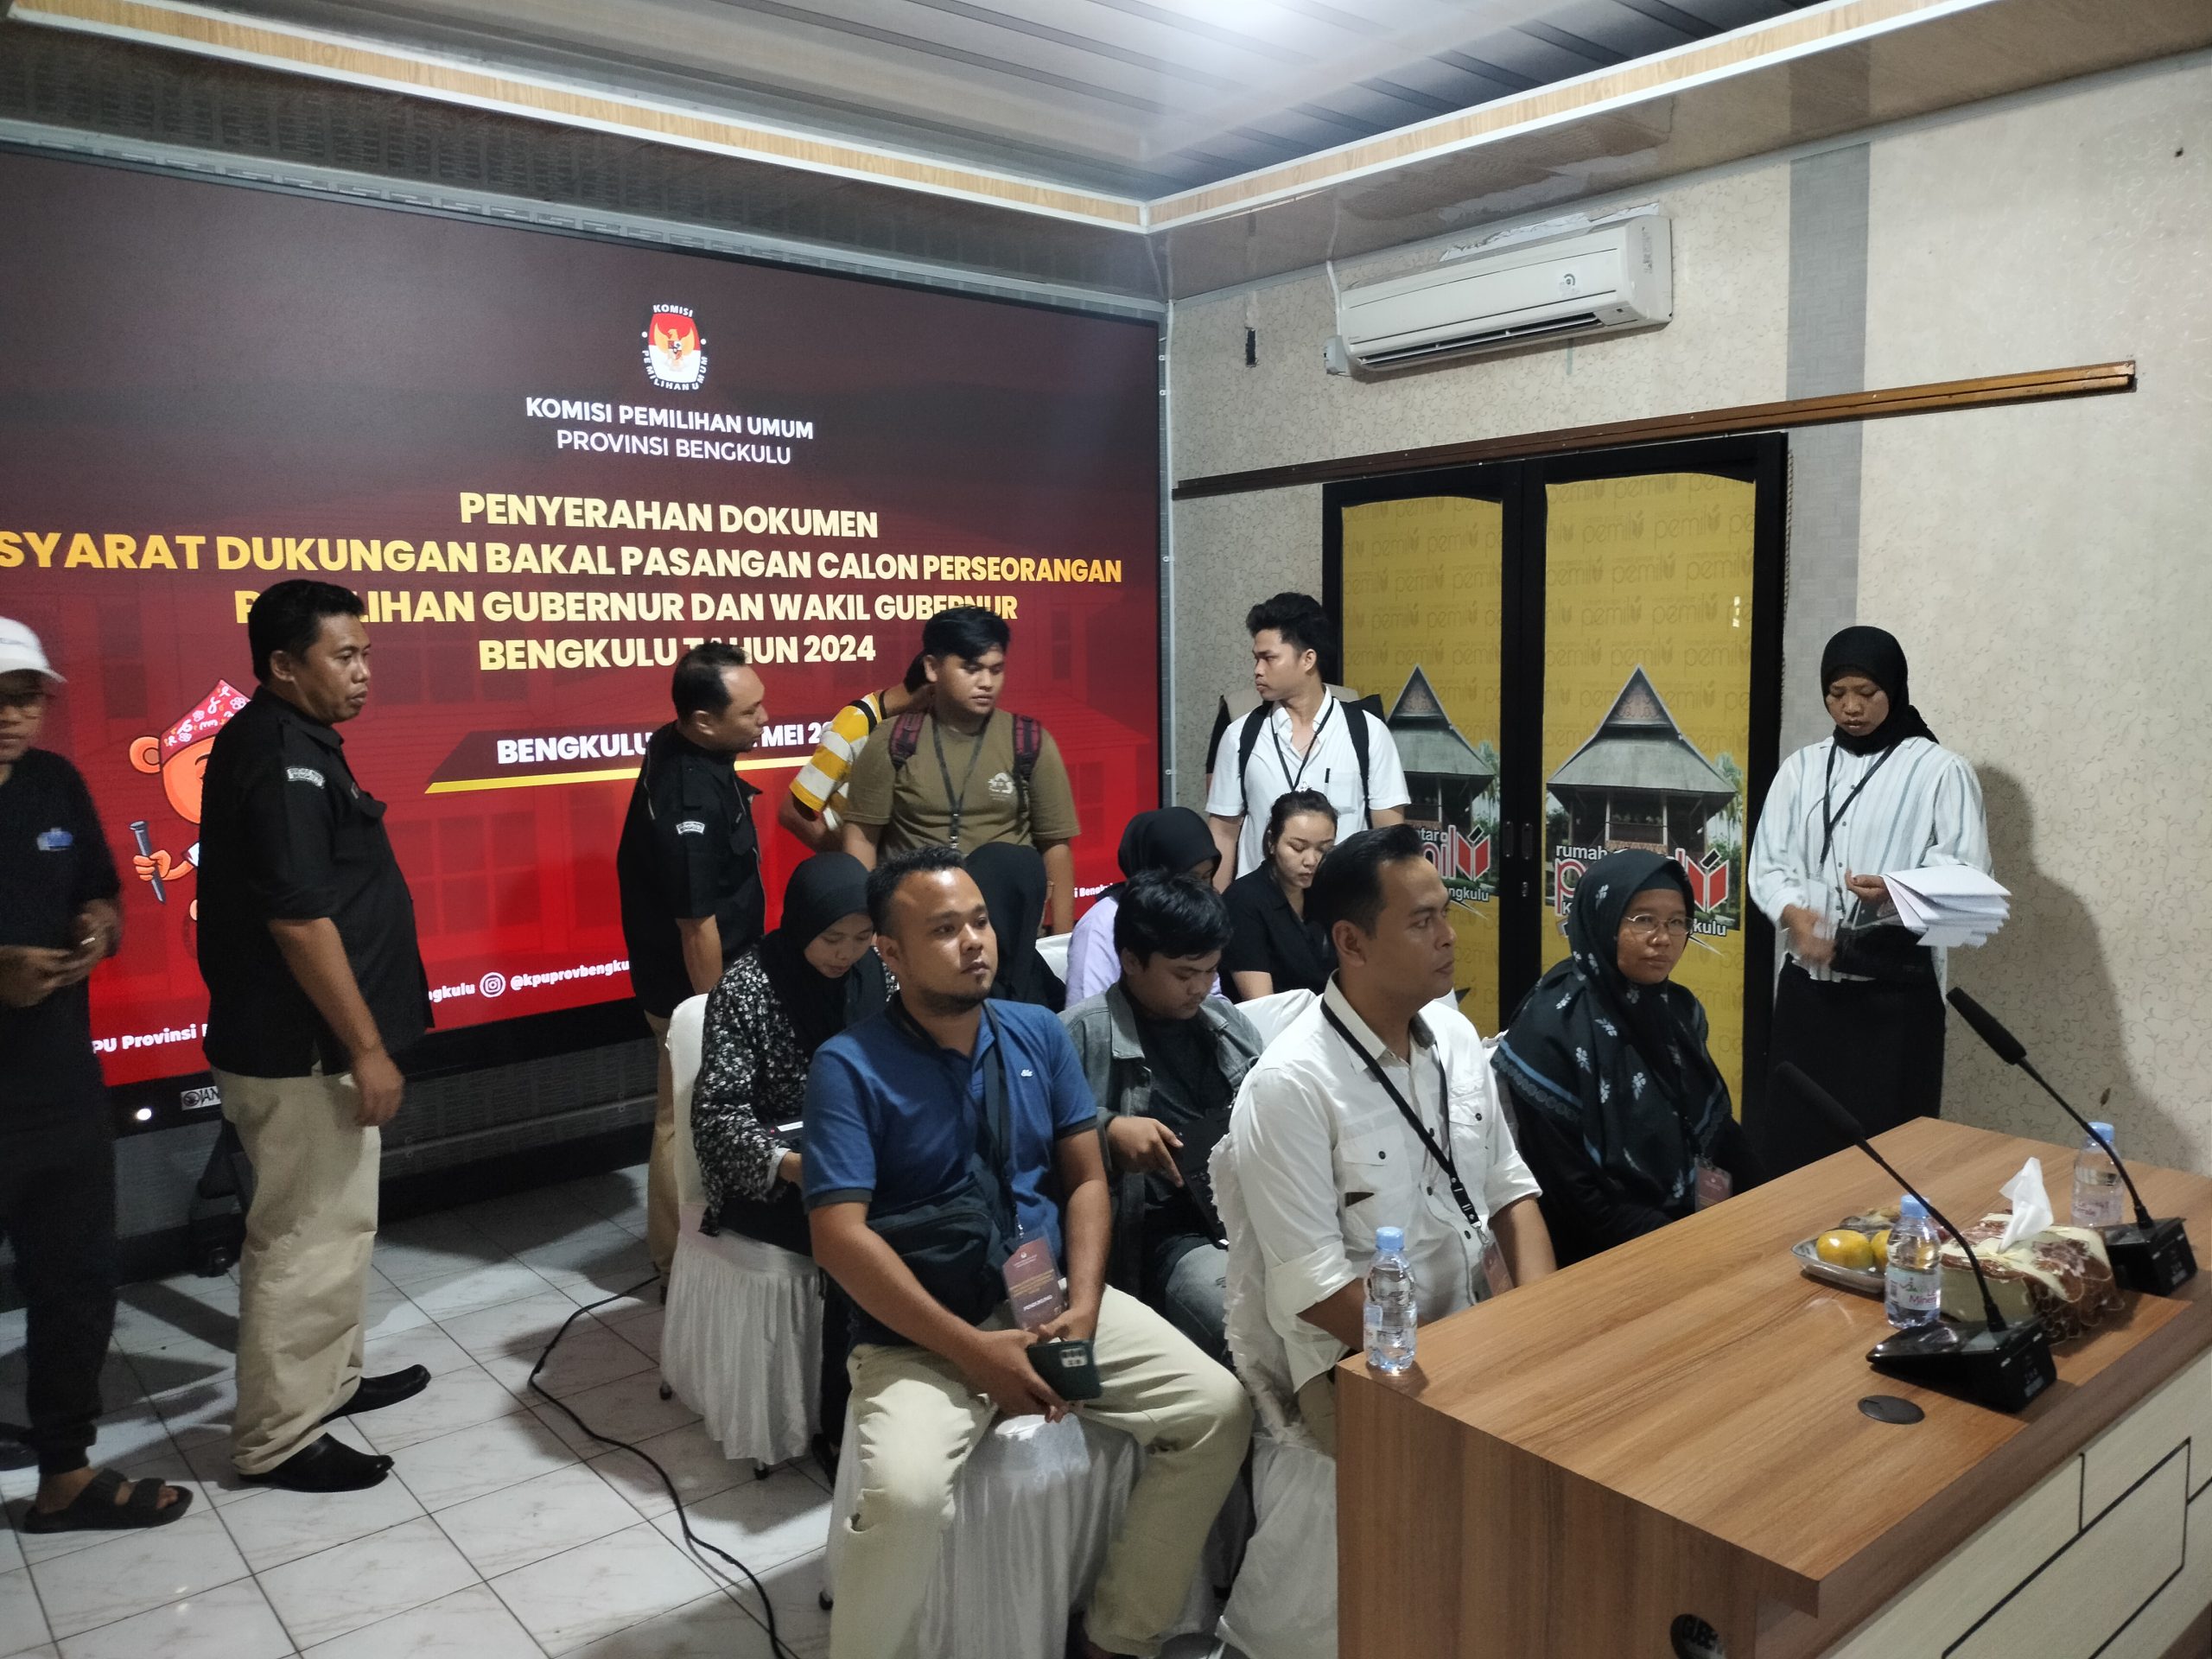 Pasangan ‘Beken’ Resmi Mendaftar ke KPU Provinsi Bengkulu dengan 200 Ribu Dukungan